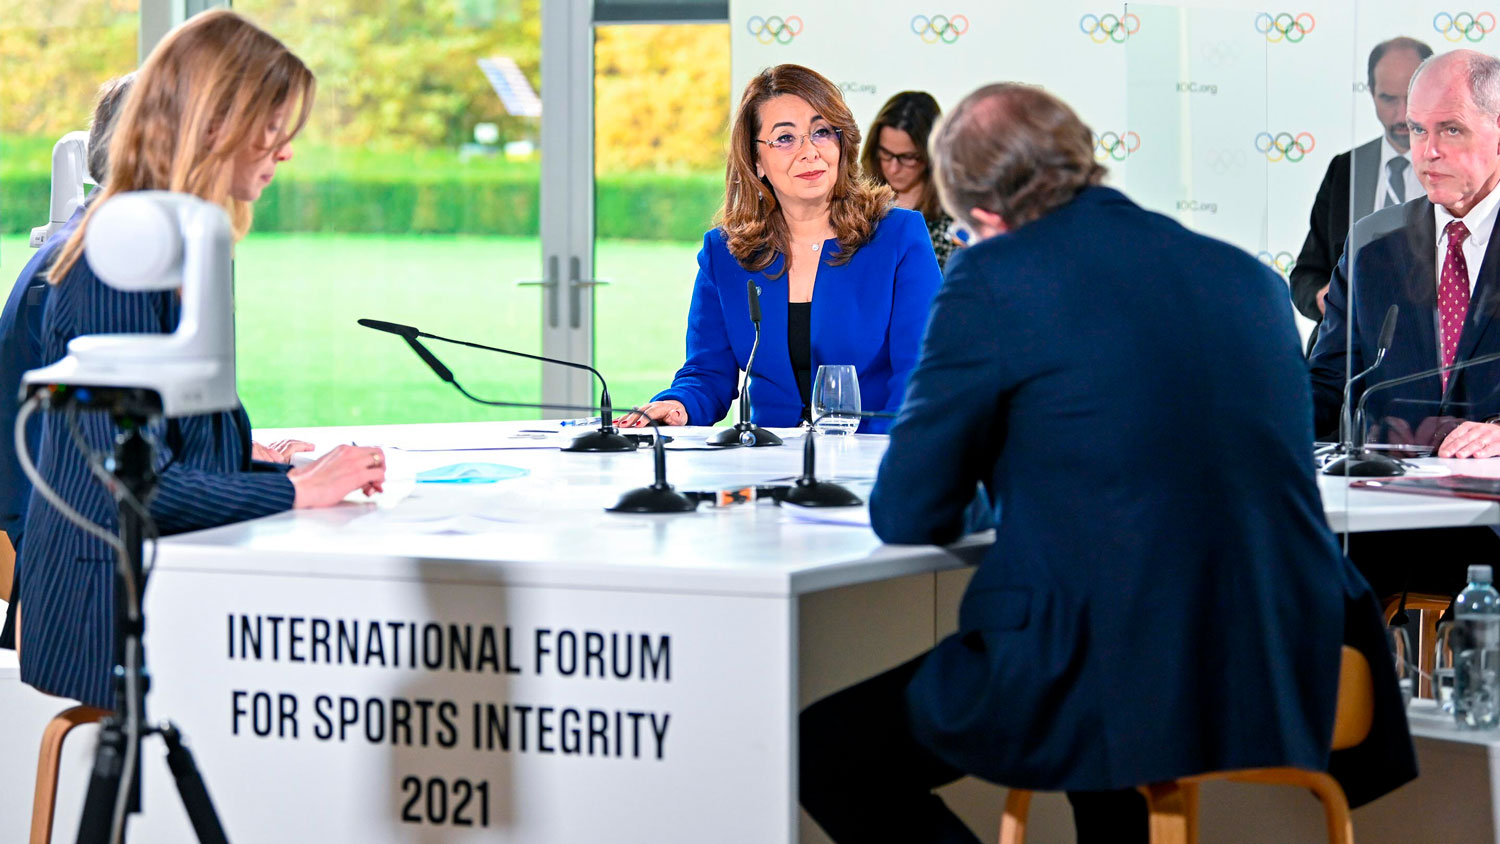 Fórum Internacional para Integridade Esportiva destaca esforços para impedir corrupção no esporte